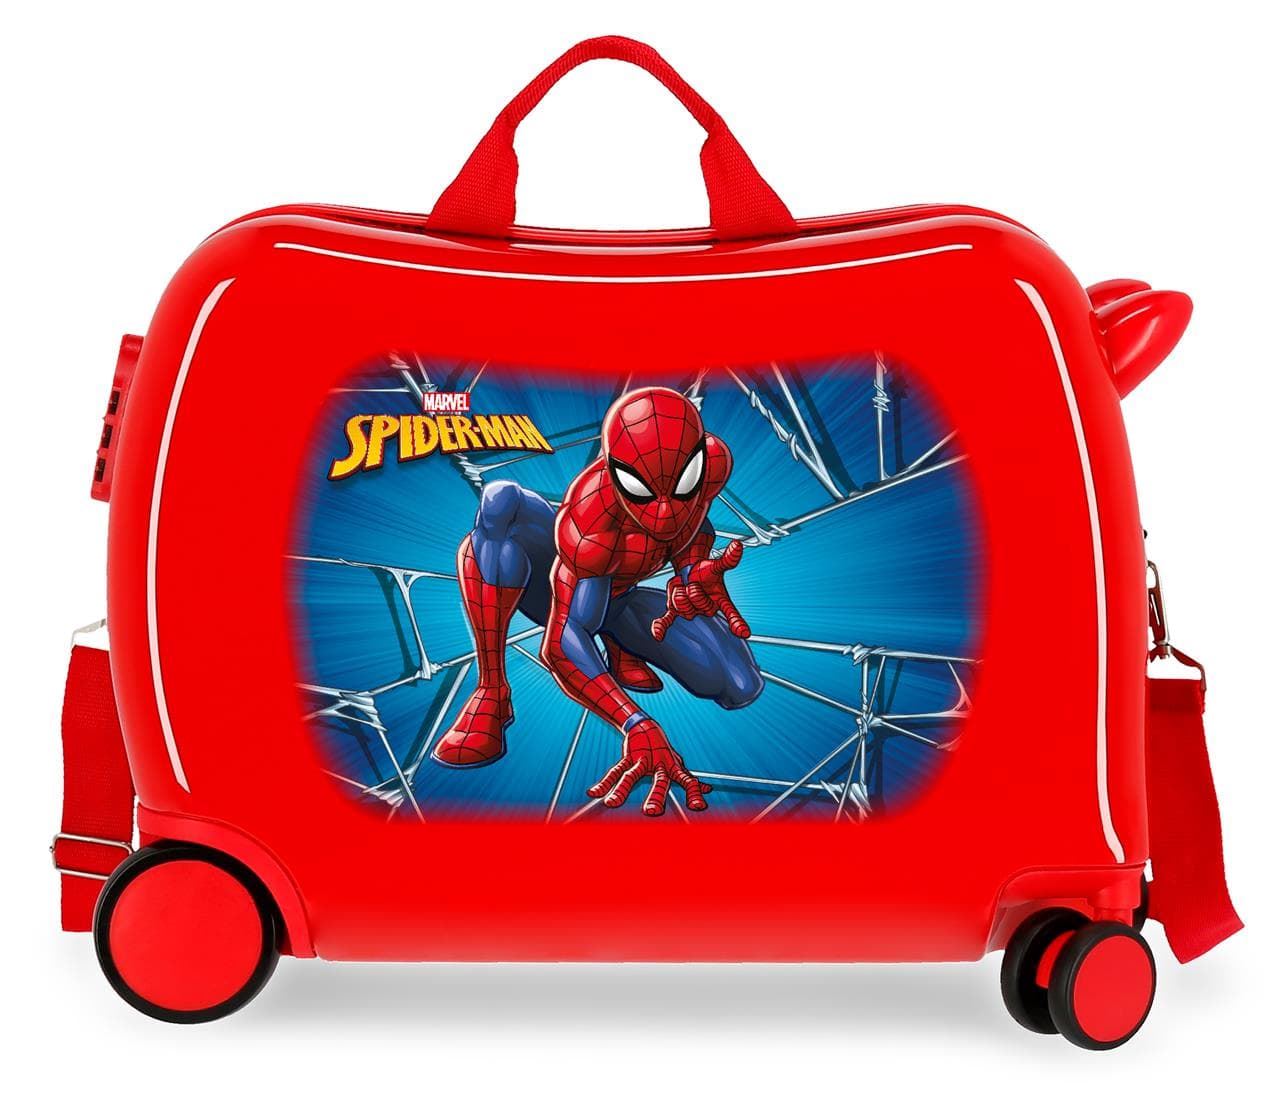 Spiderman Maleta Correpasillos de Cabina Rigida y Resistente con ruedas giratorias - Imagen 1